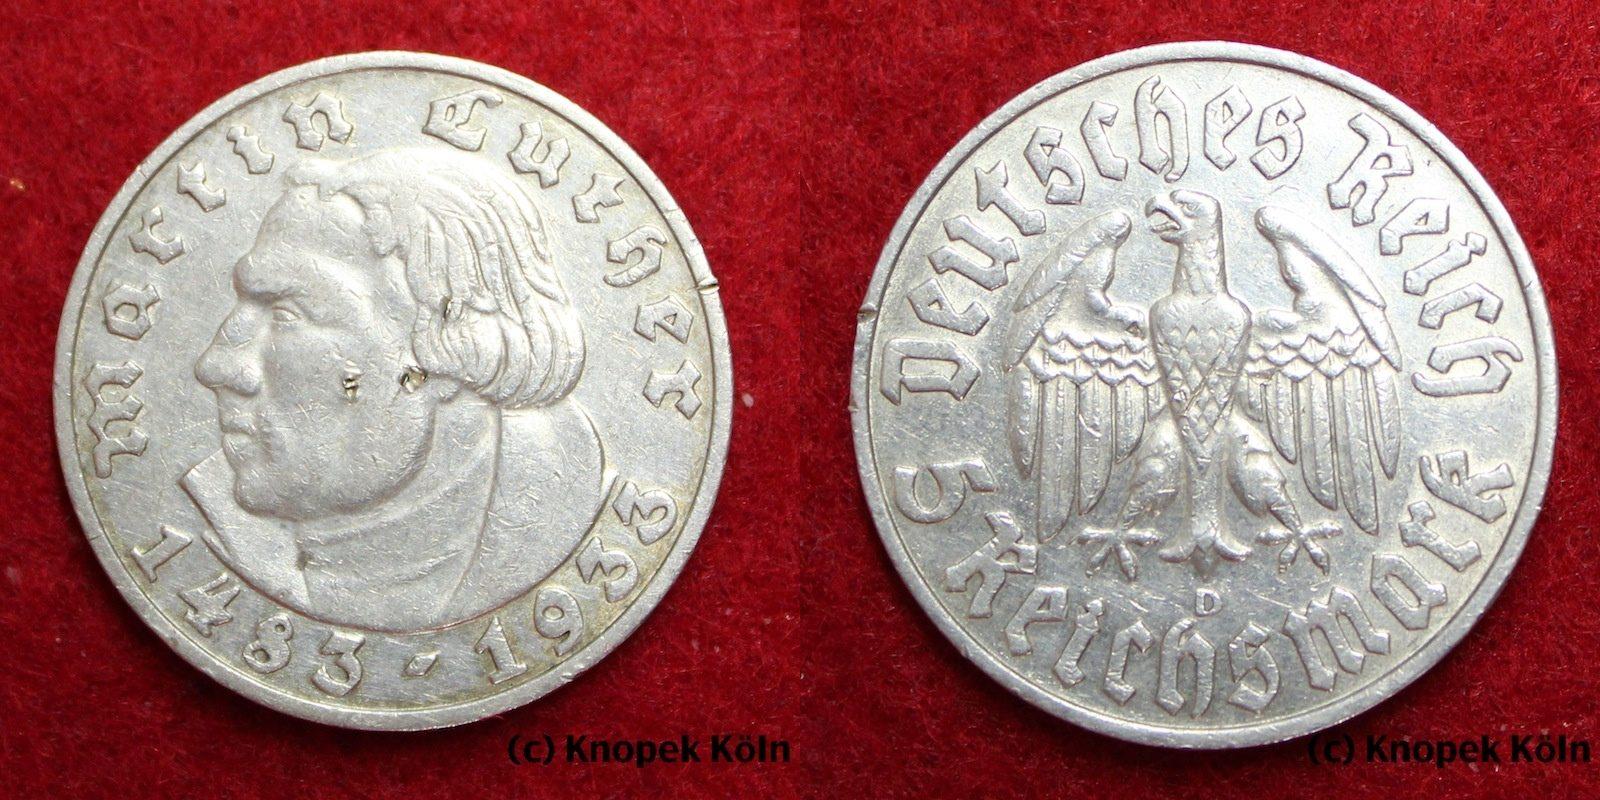 Foto Drittes Reich 5 Reichsmark Rm 1933 D